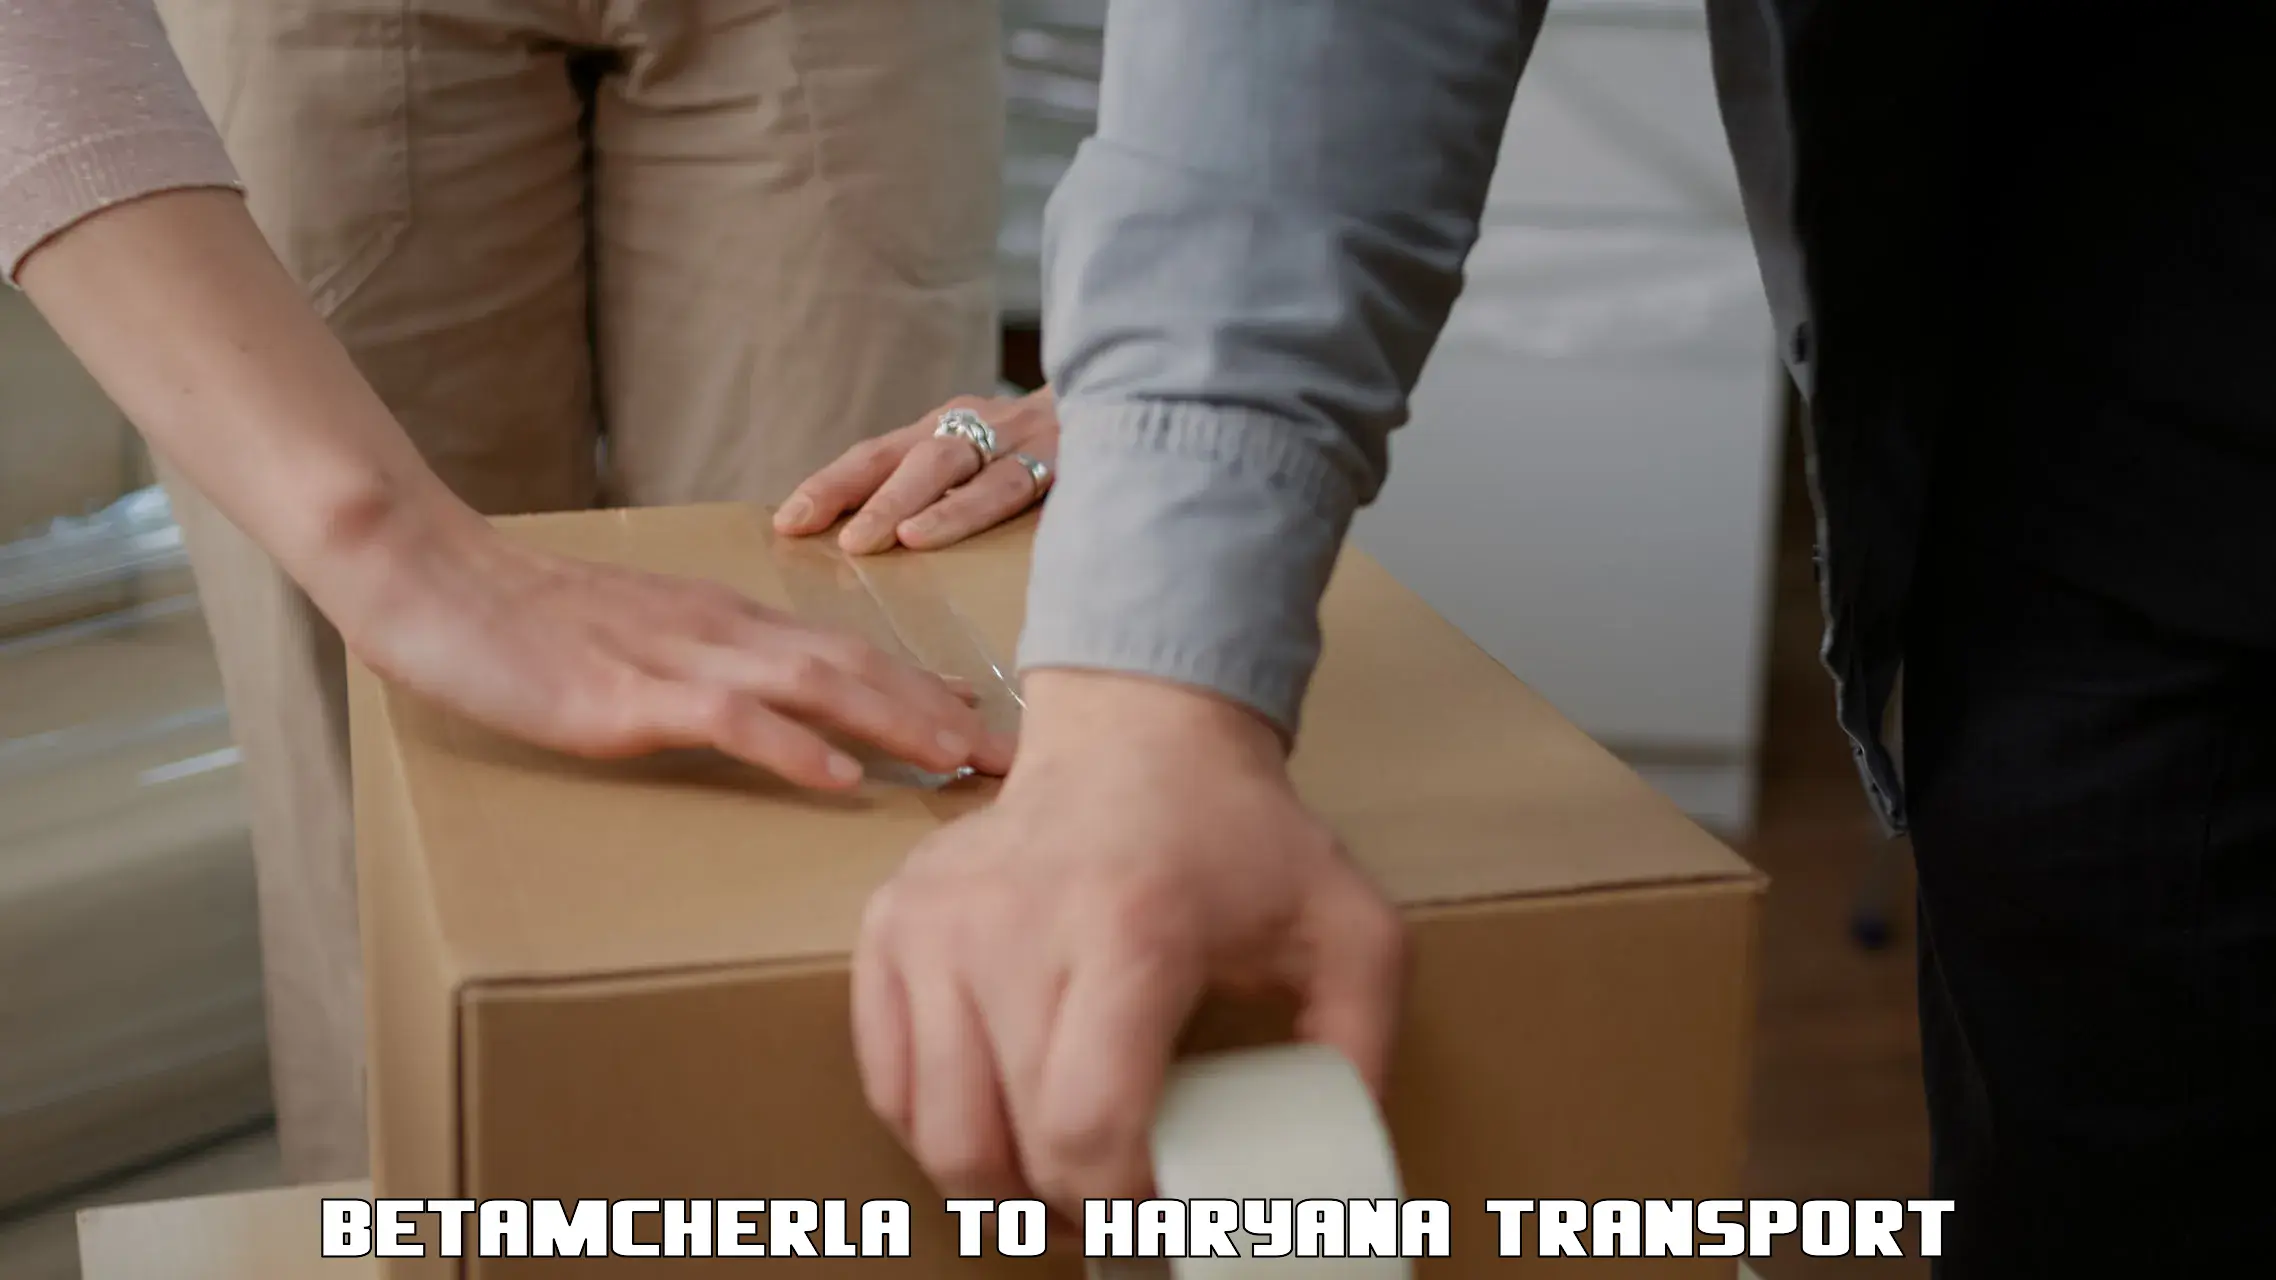 Container transport service Betamcherla to Assandh